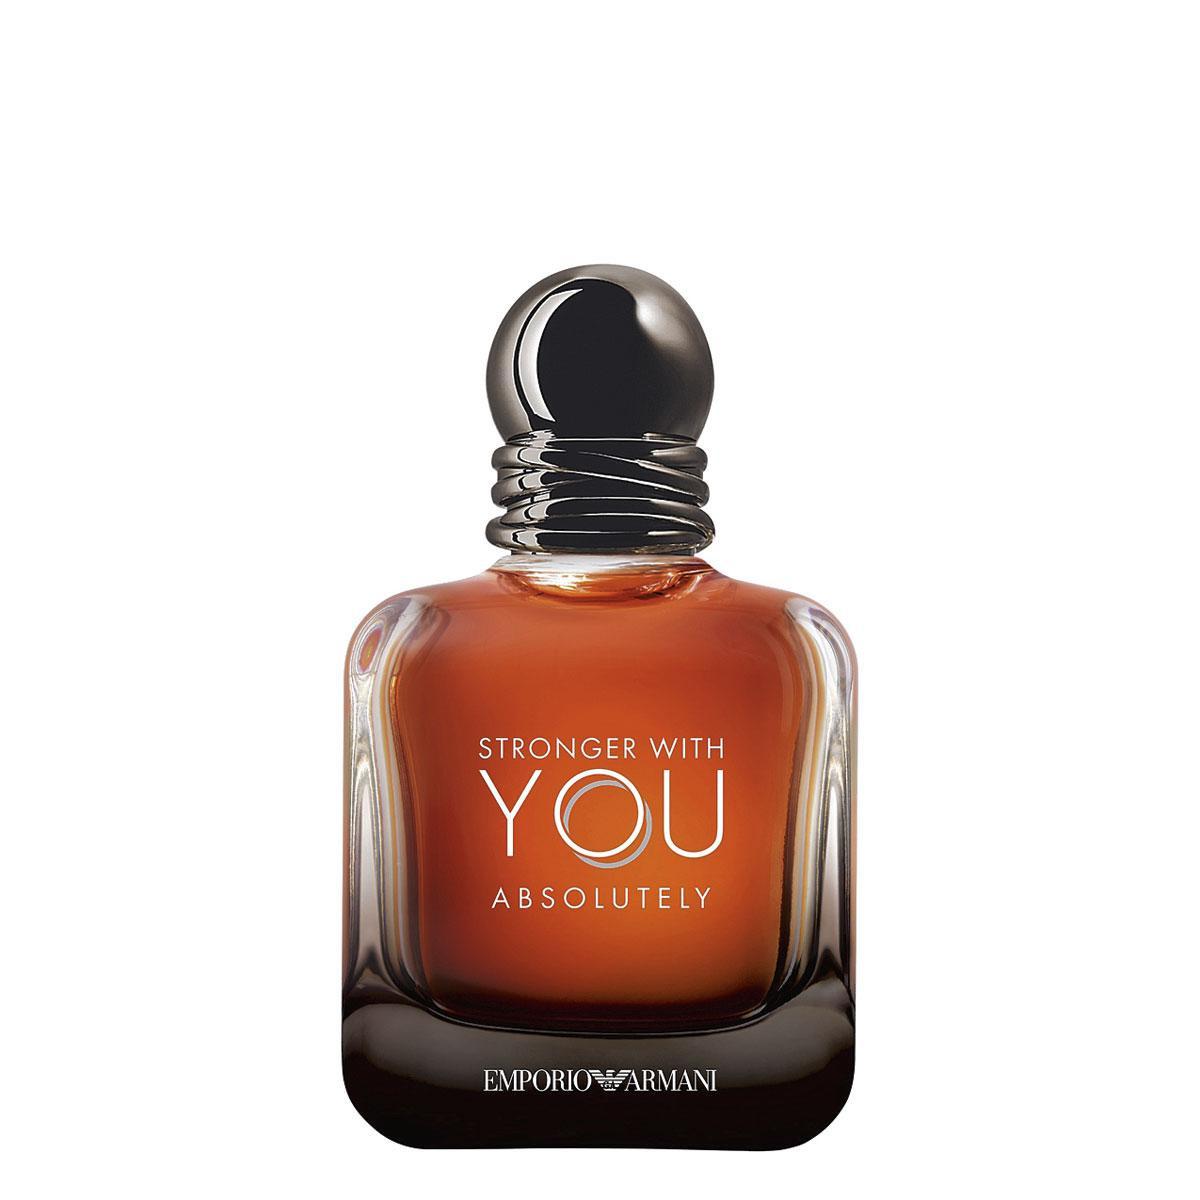 Stronger With You d'Emporio Armani. Avec Absolutely, le jus masculin se fait fougère orientale ambrée (81 ? 50 ml), en parfumerie.